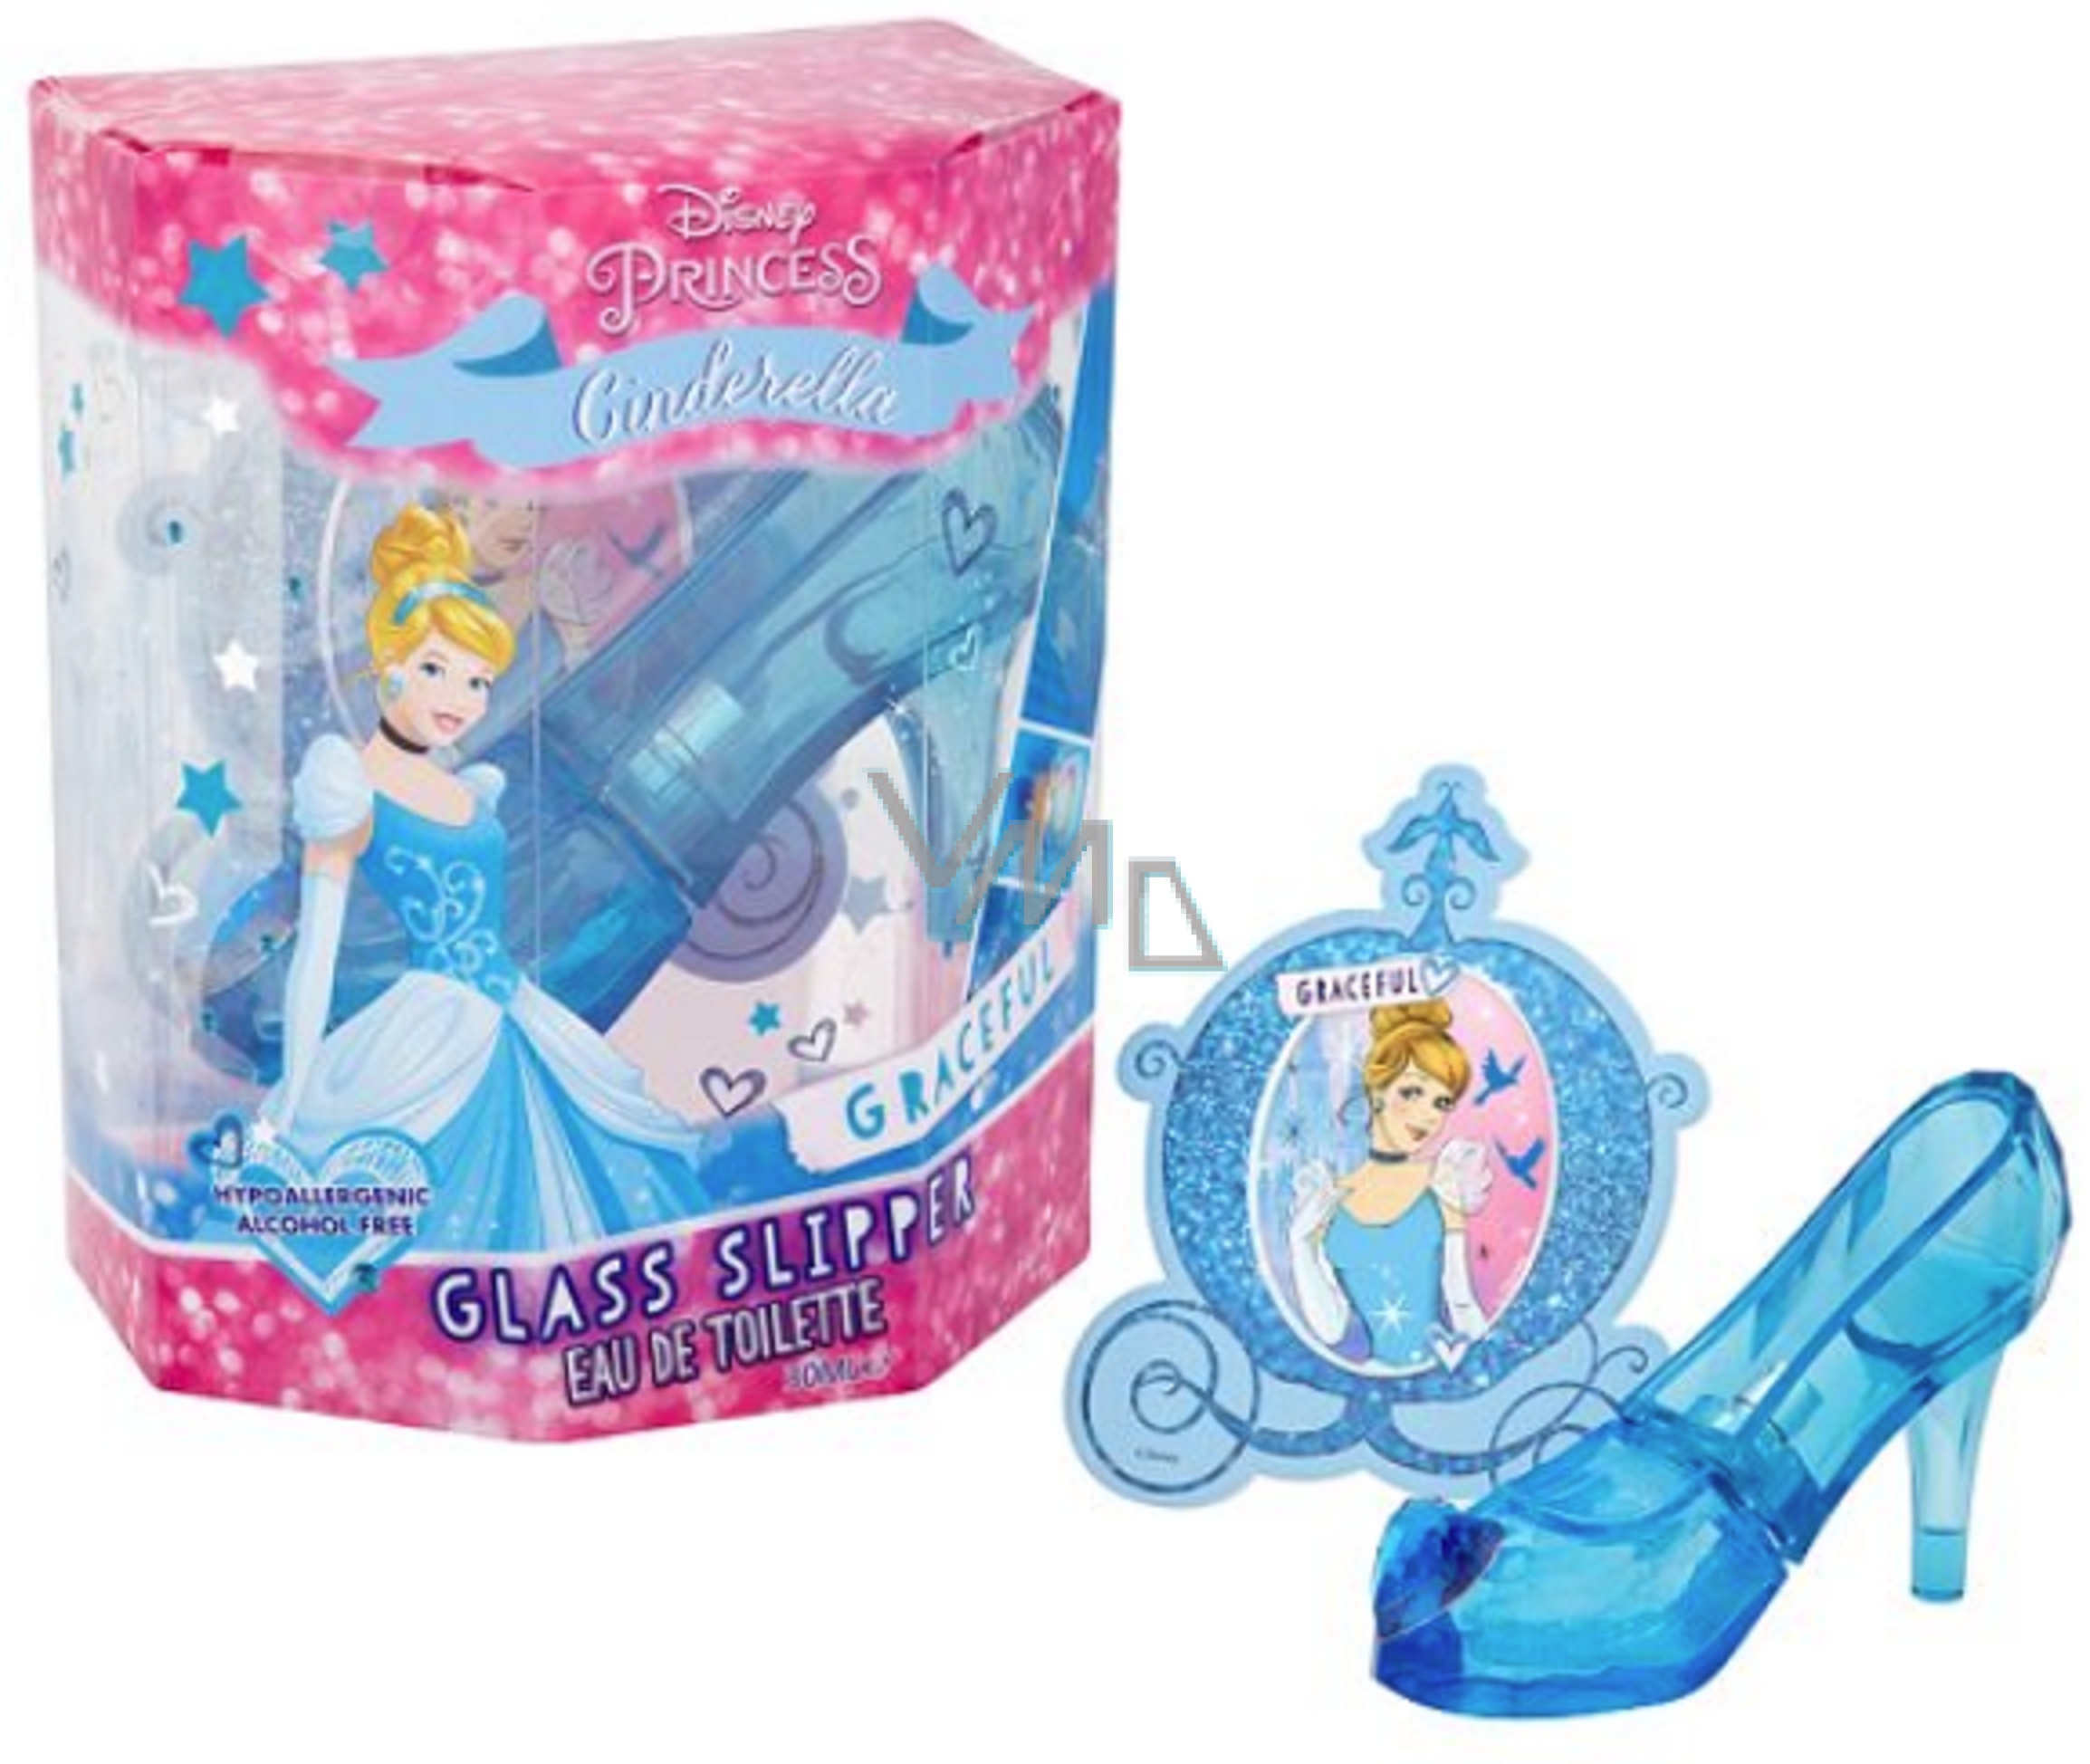 Tortenfigur Disney Princess Ariel Cinderella Glass Slipper Figur Modell A629 JK 